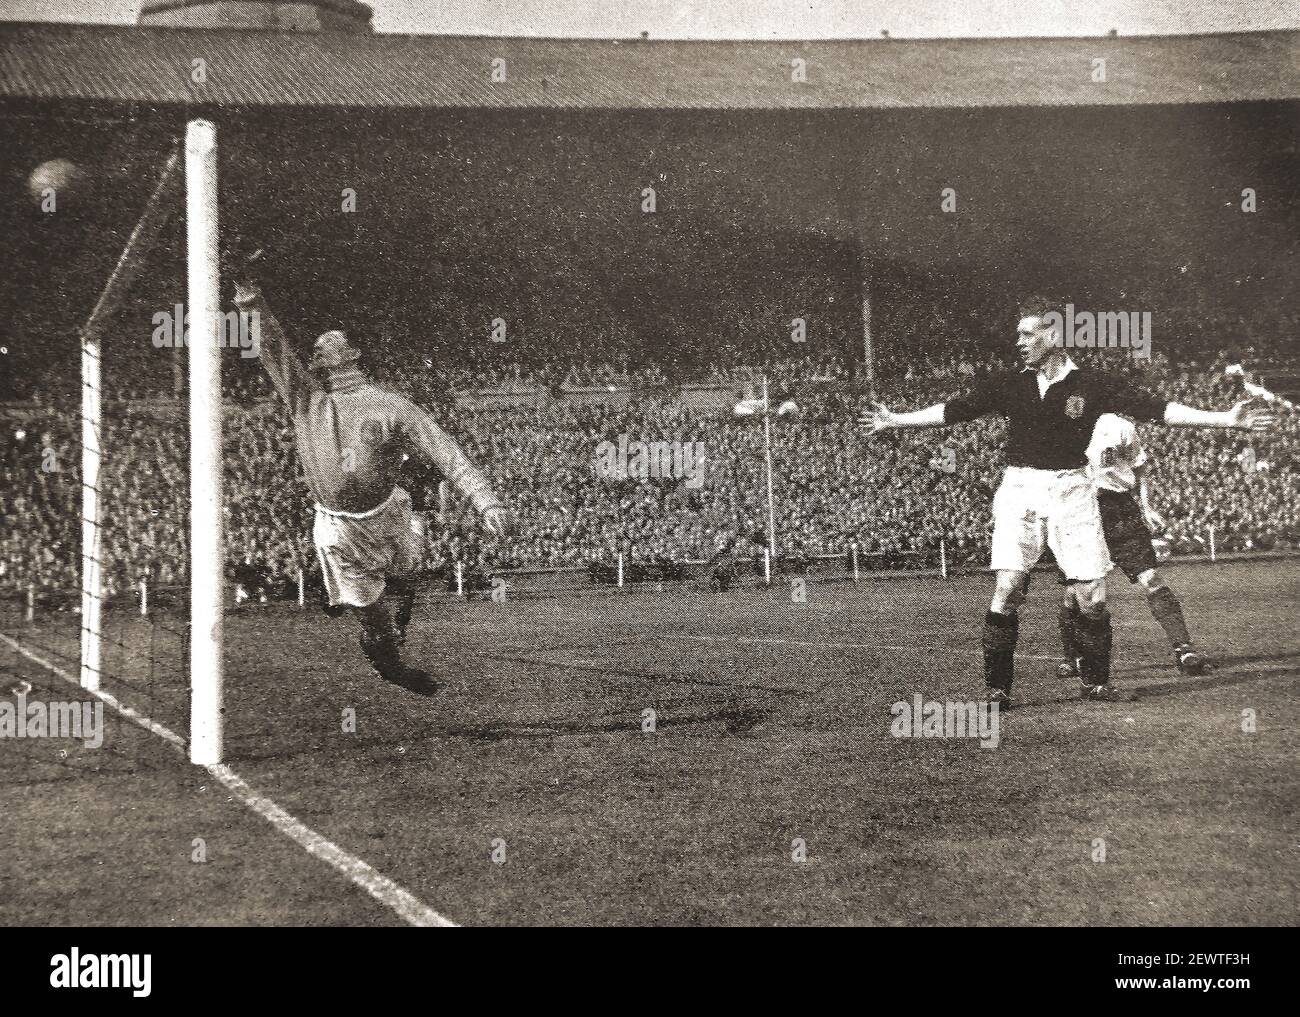 Une photo de presse ancienne d'un but marqué lors du match international de football 1947 entre l'Angleterre et l'Écosse à Webley, Englod. Banque D'Images